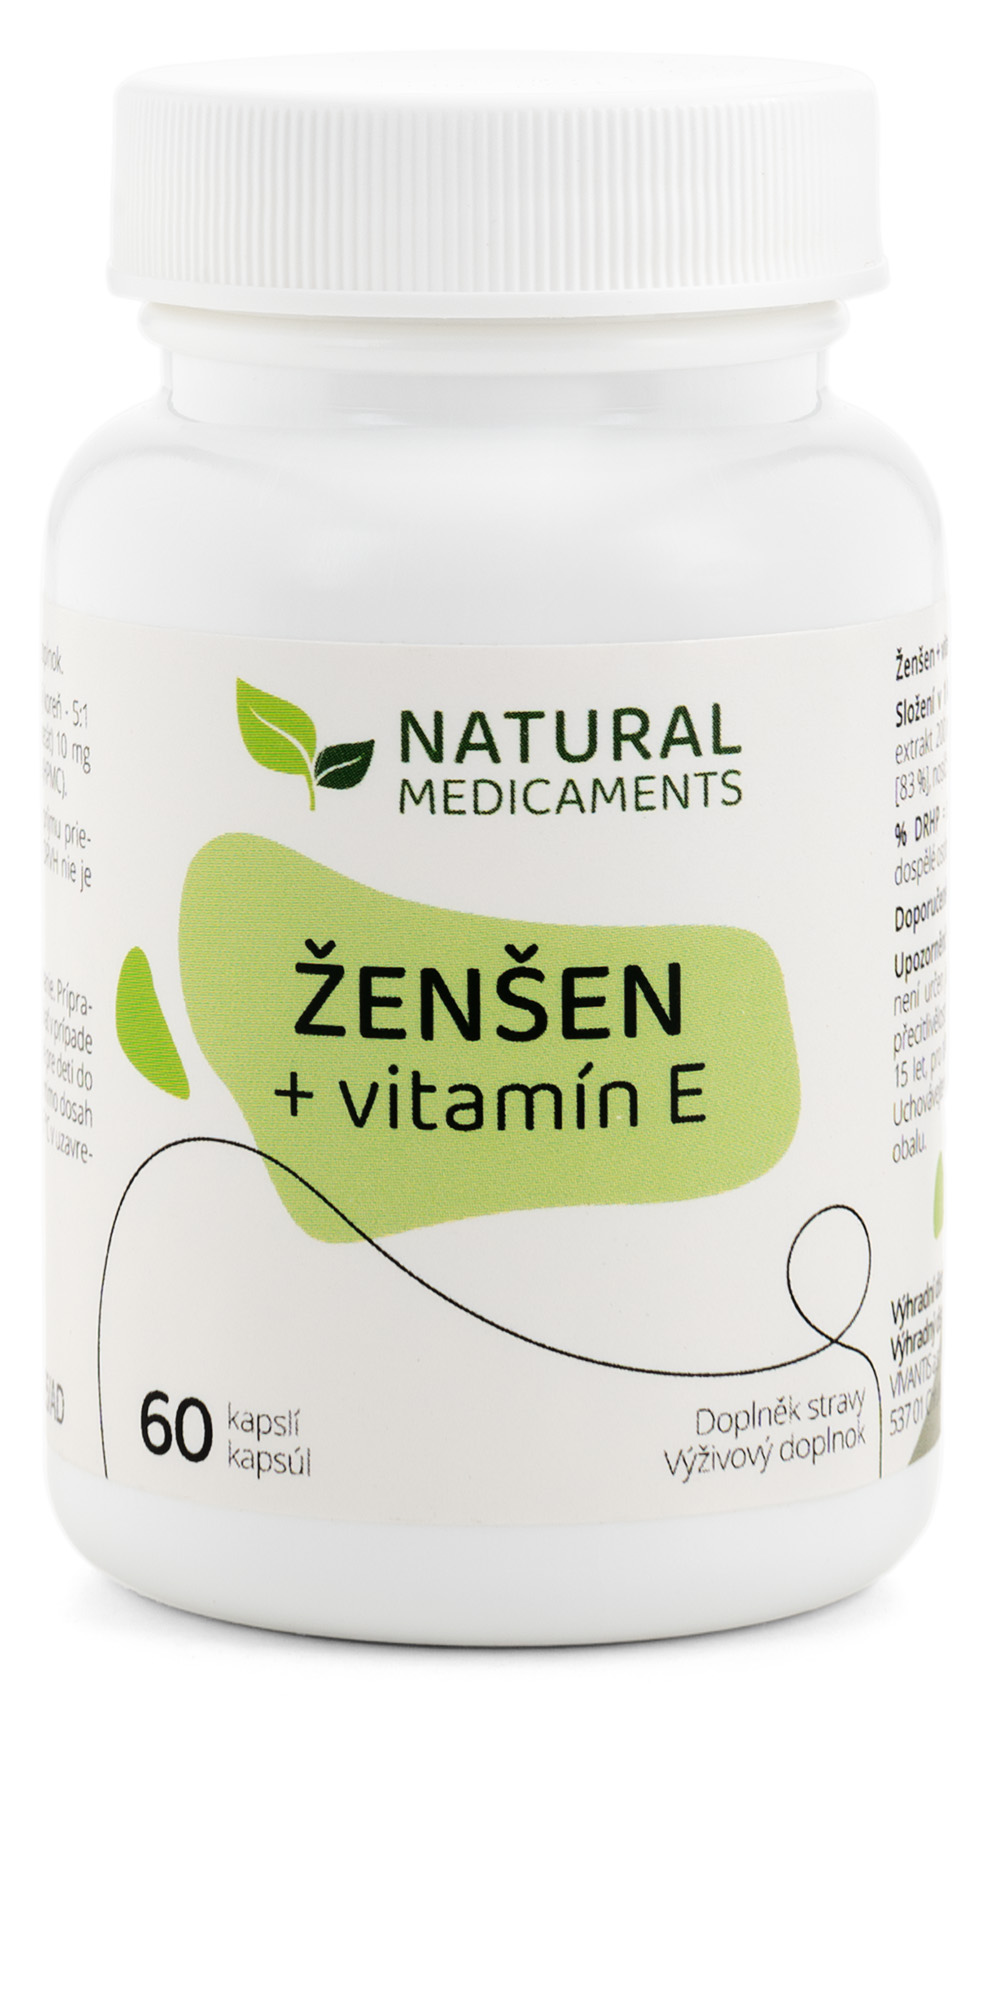 Zobrazit detail výrobku Natural Medicaments Ženšen + vitamín E 60 kapslí